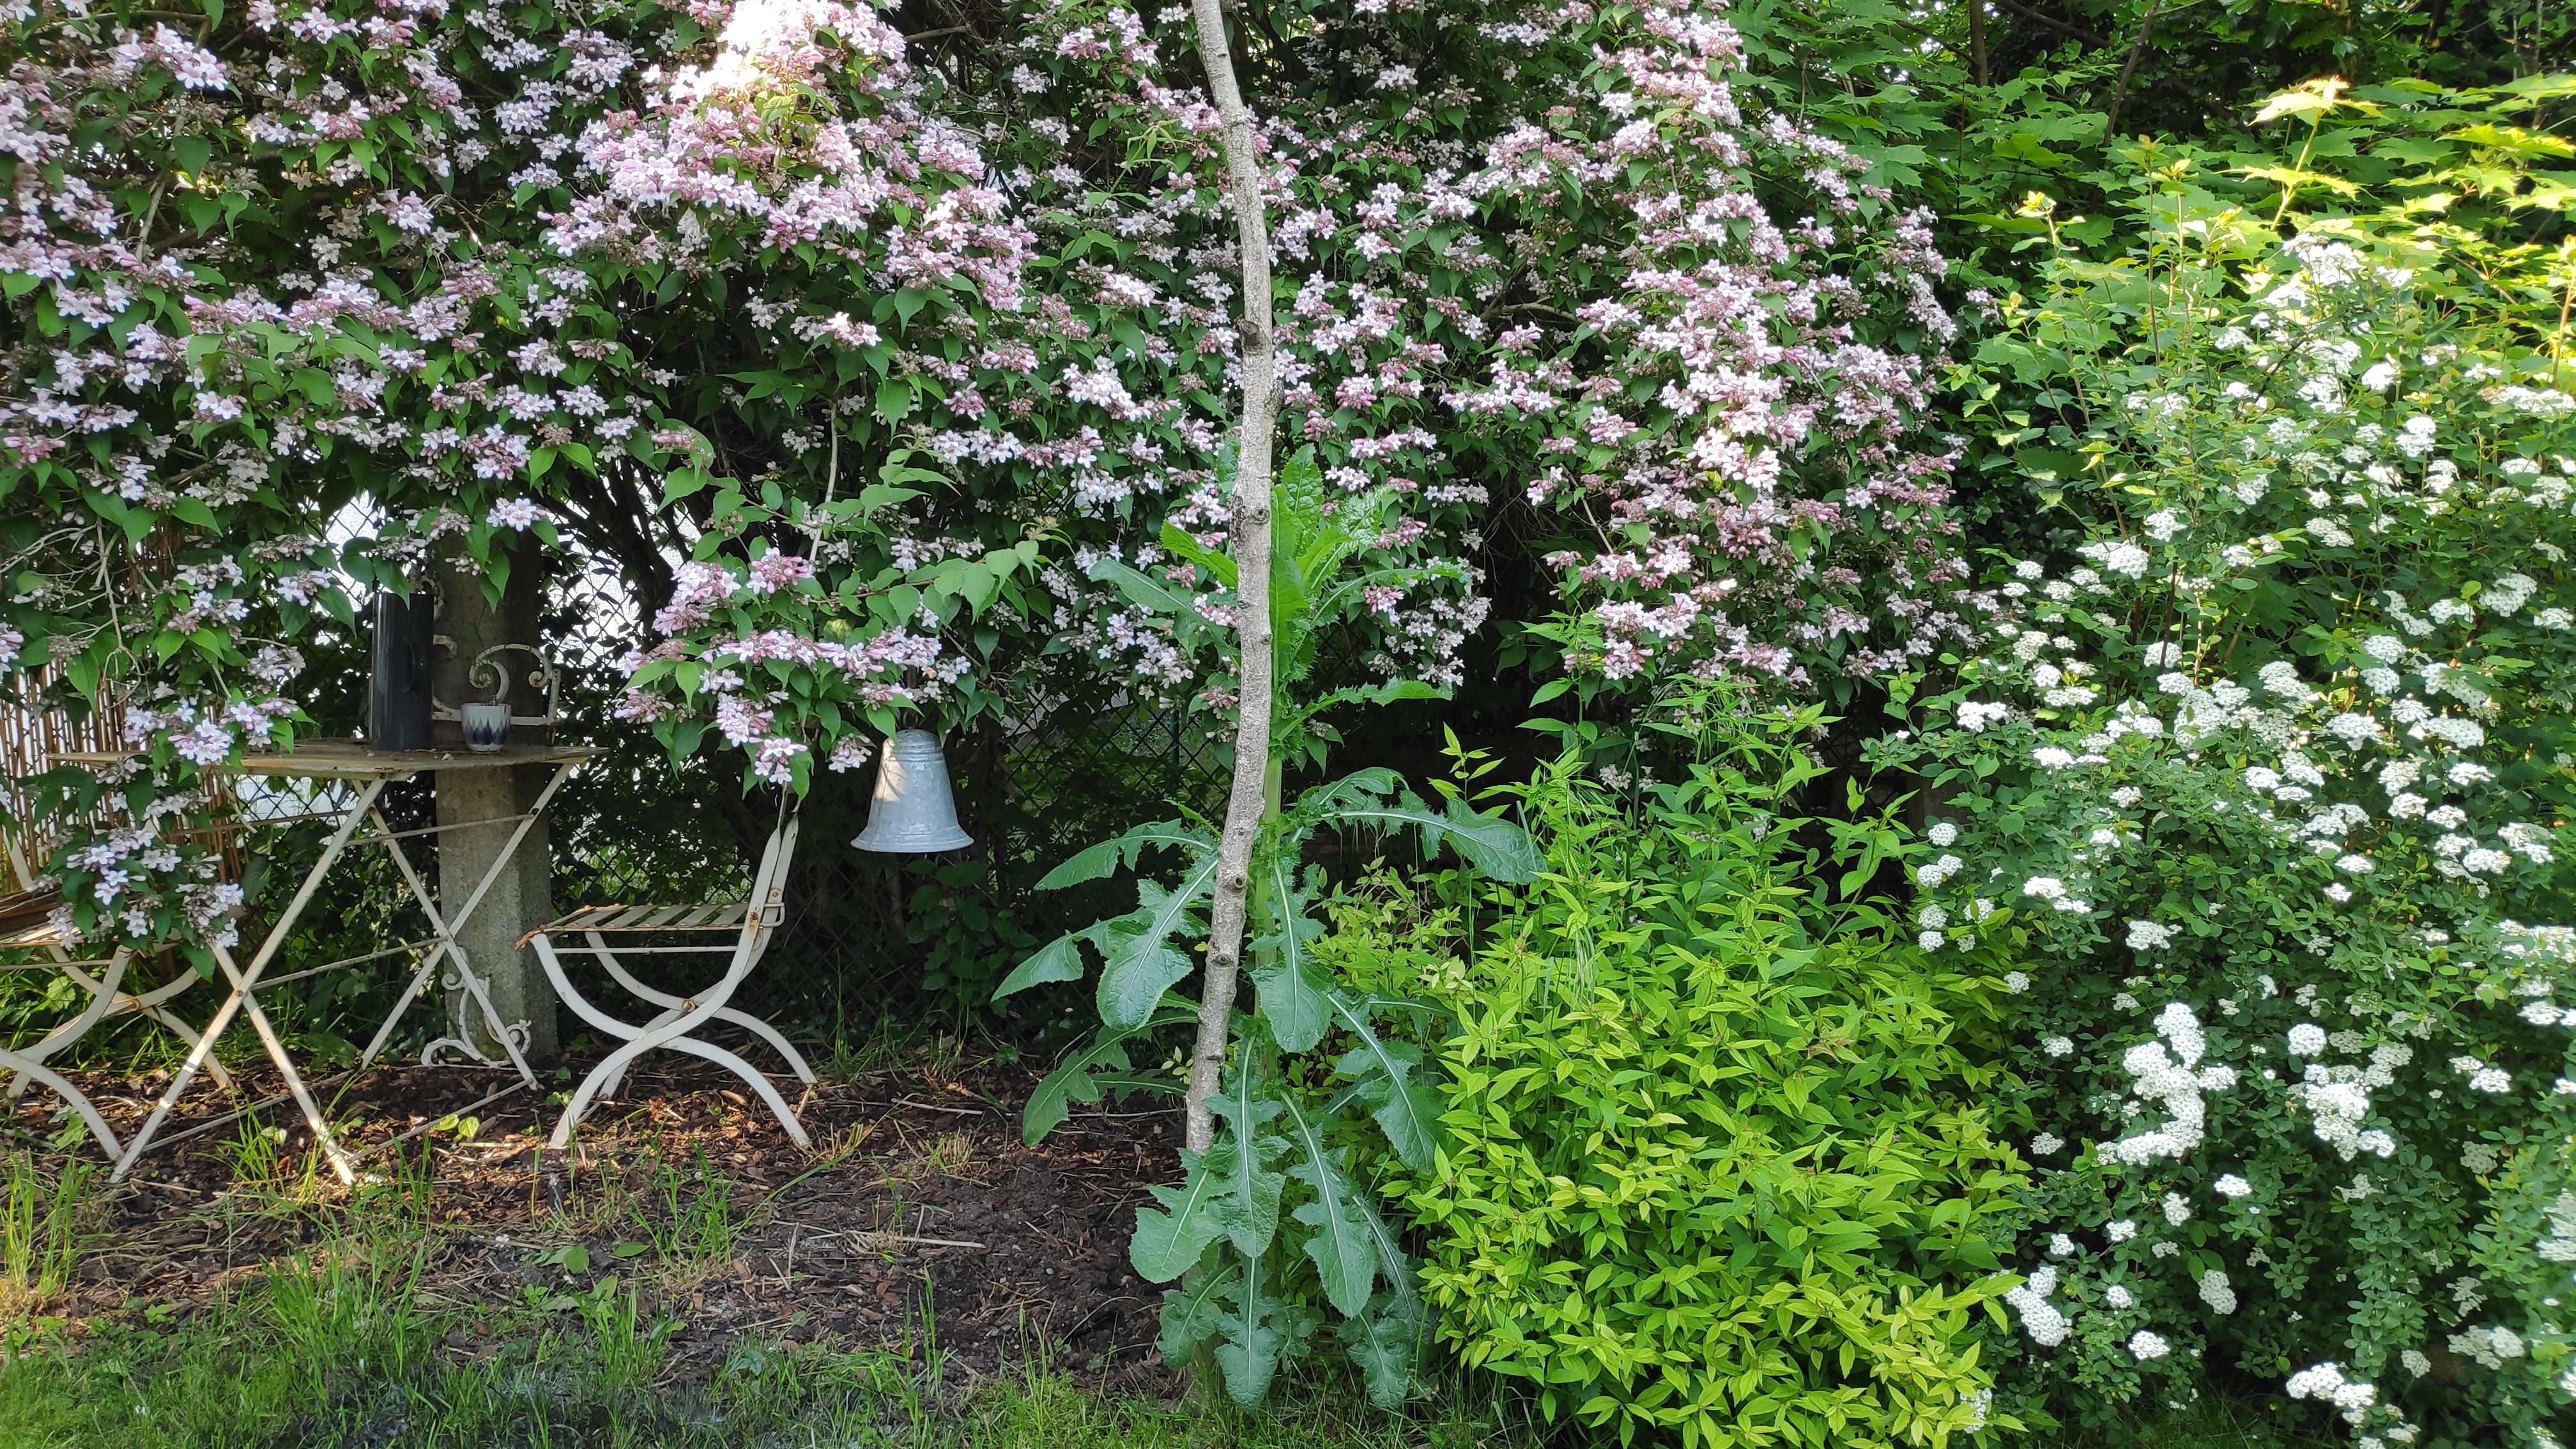 .Blumendach.
#Kolkwitzie #Gartengestaltung #Garten #Gartenmöbel #Metallmöbel #Ruheecke